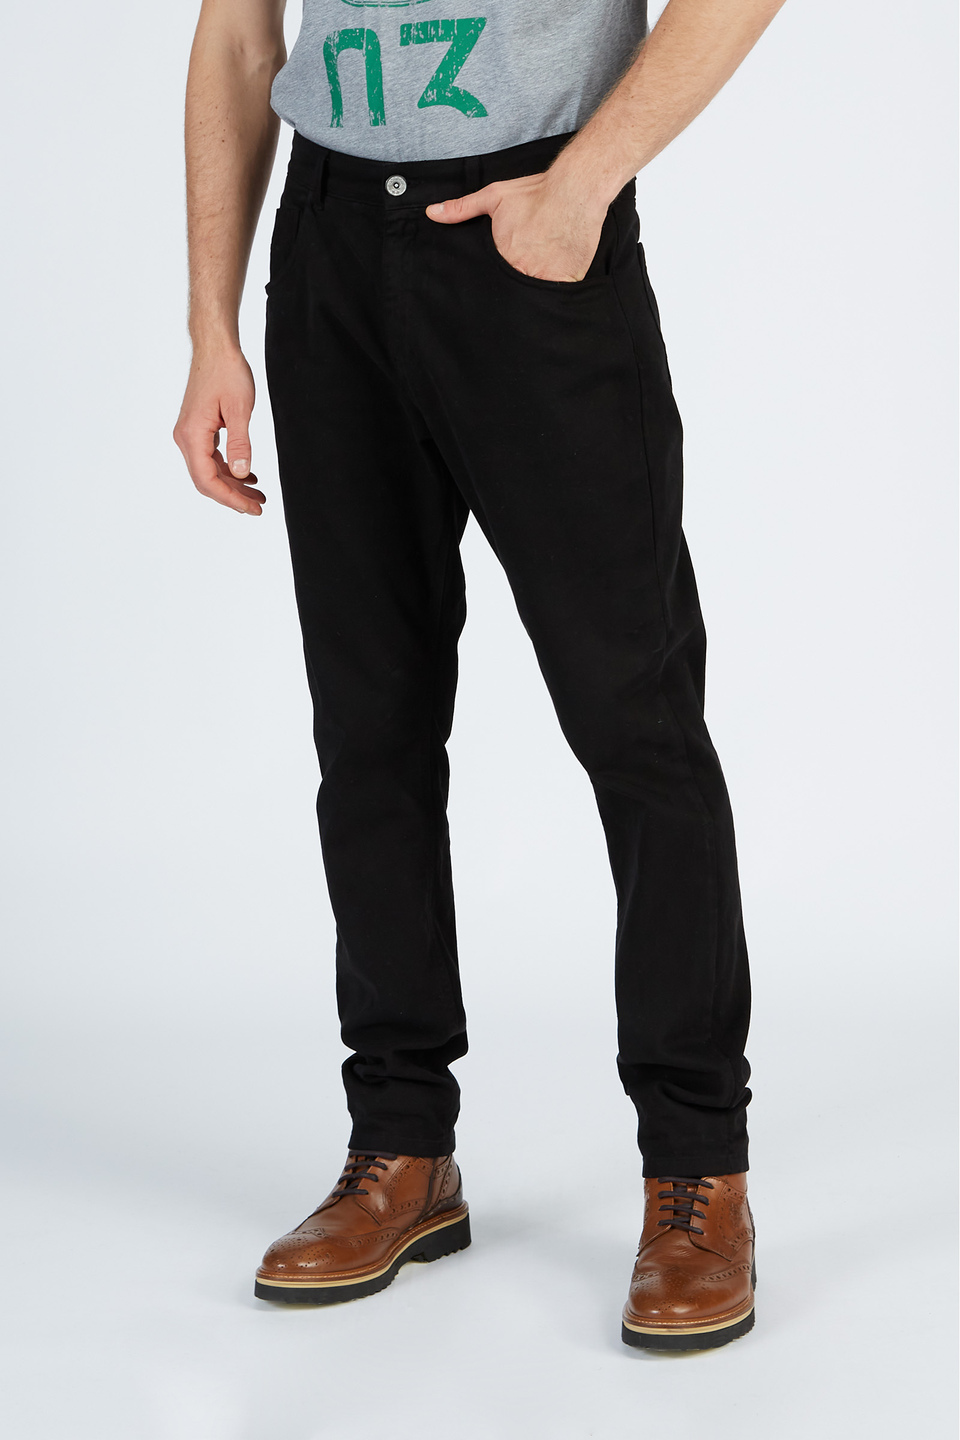 Pantalón de hombre en algodón elástico fit modelo chino Negro La Martina | Shop